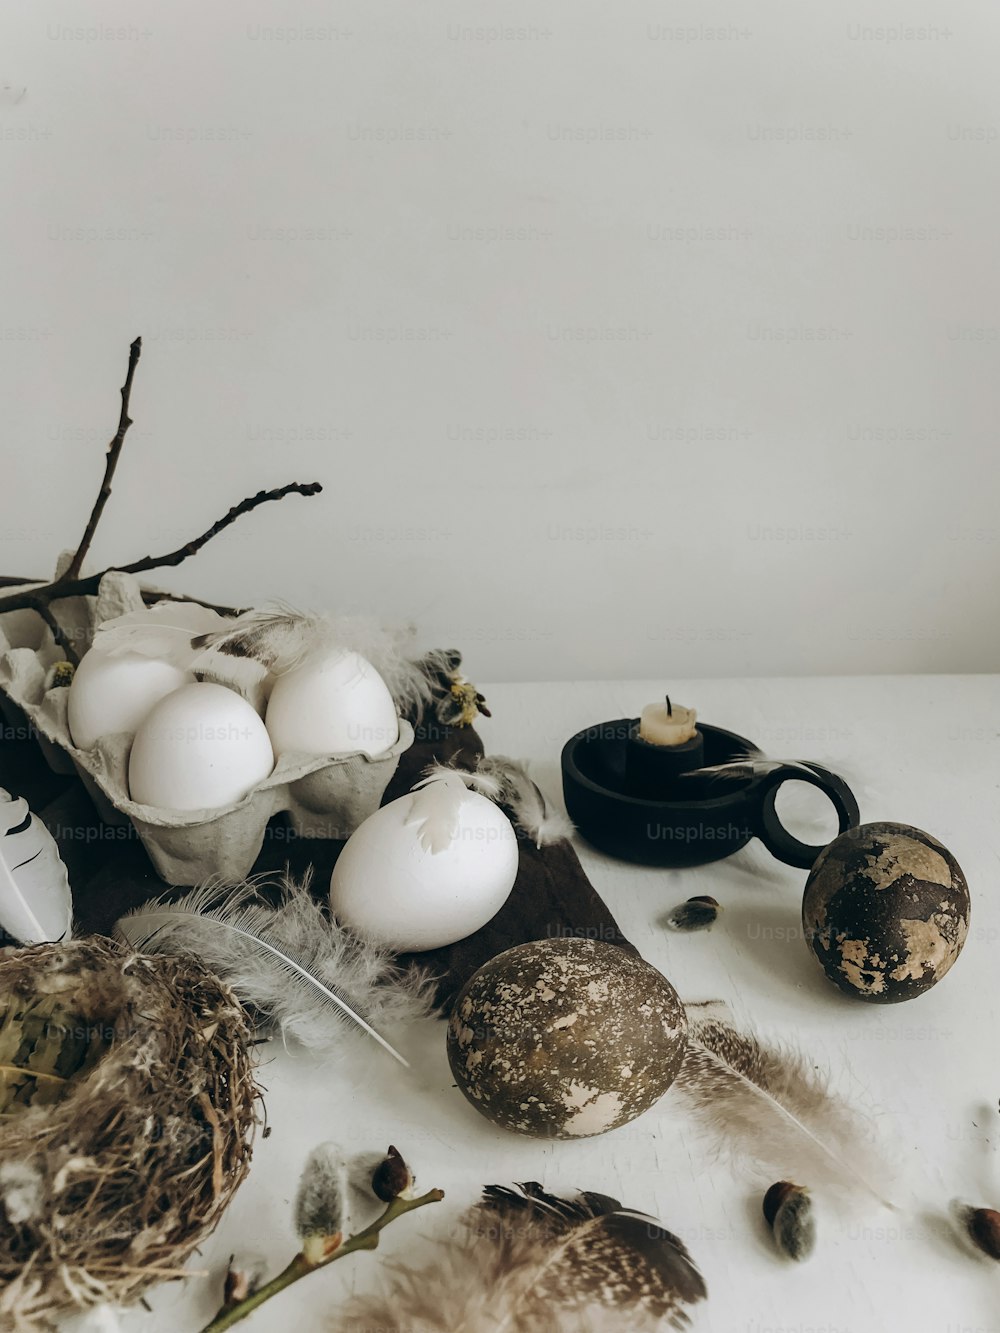 Natürliche Ostereier, Federn, Weidenzweige, Nest und Kerze auf rustikalem Stoff auf weiß gealtertem Tisch. Stilvolles ländliches Osterstillleben. Moderne schlichte Ästhetik, weiße und graue Farben